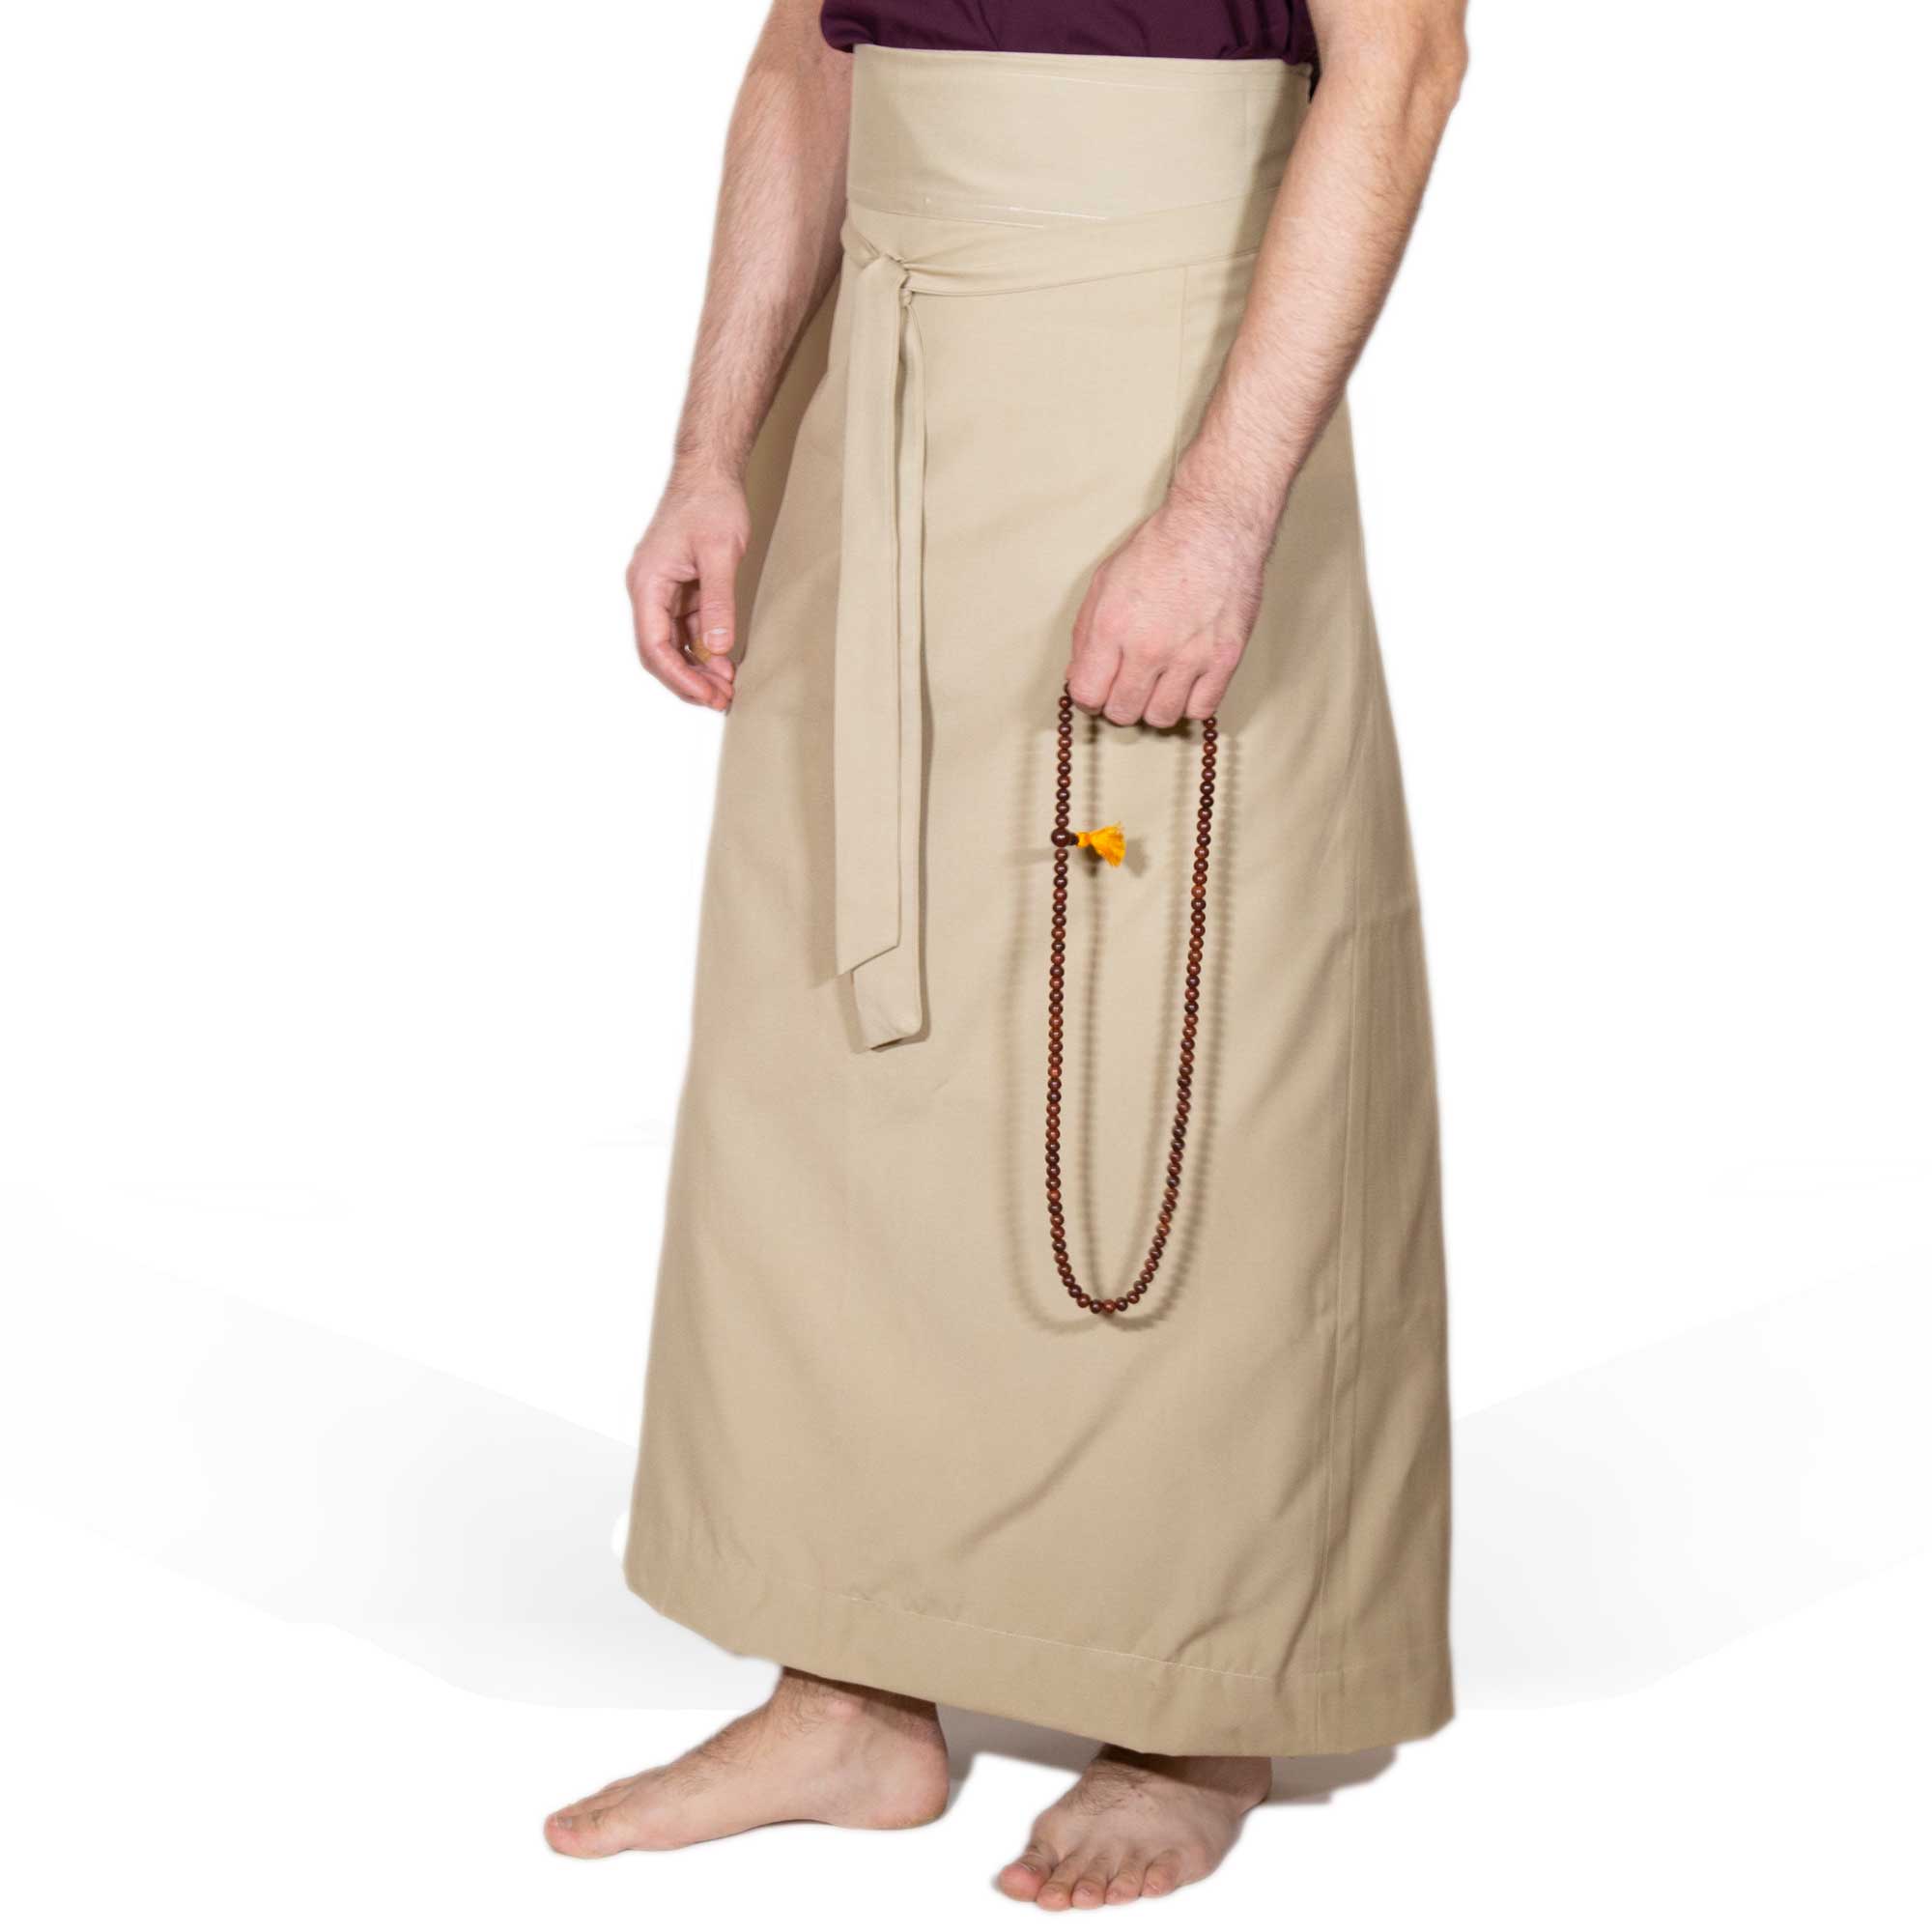 Wraparound Chuba Skirt - Khaki